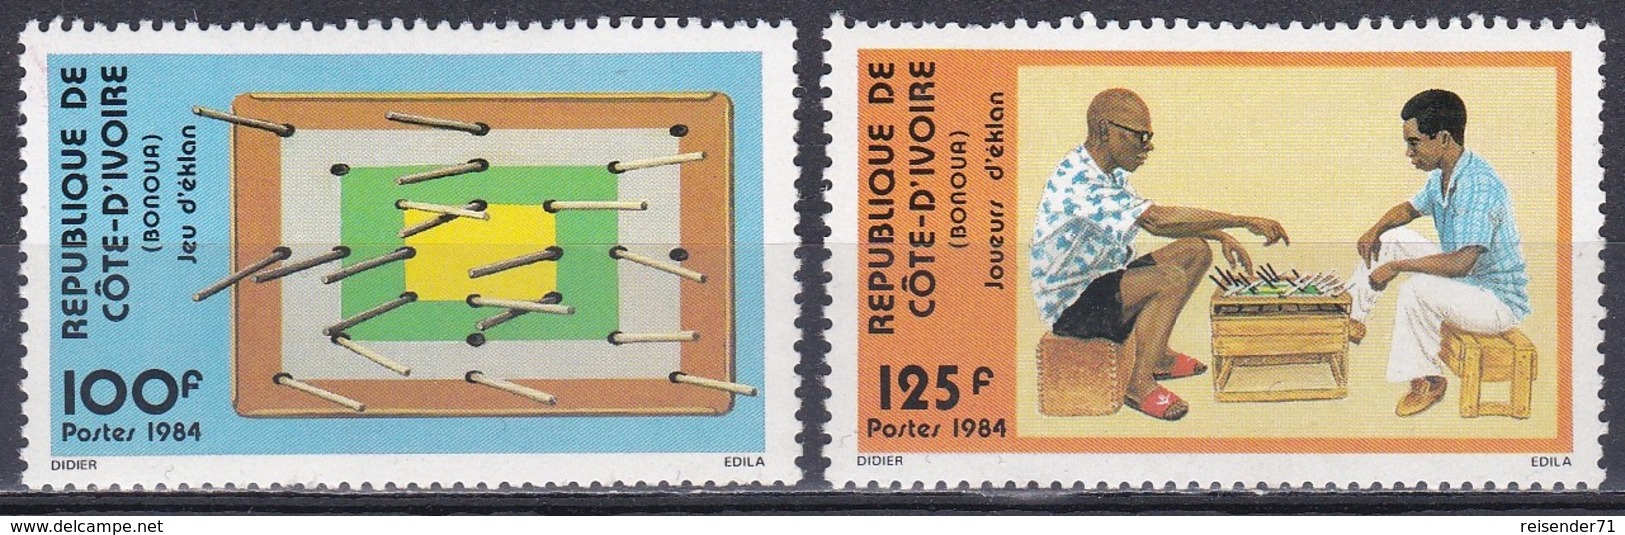 Elfenbeinküste Ivory Coast Cote D'Ivoire 1984 Spiele Games Eklan-Spiel Brettspiele Kinder Children, Mi. 824-5 ** - Côte D'Ivoire (1960-...)